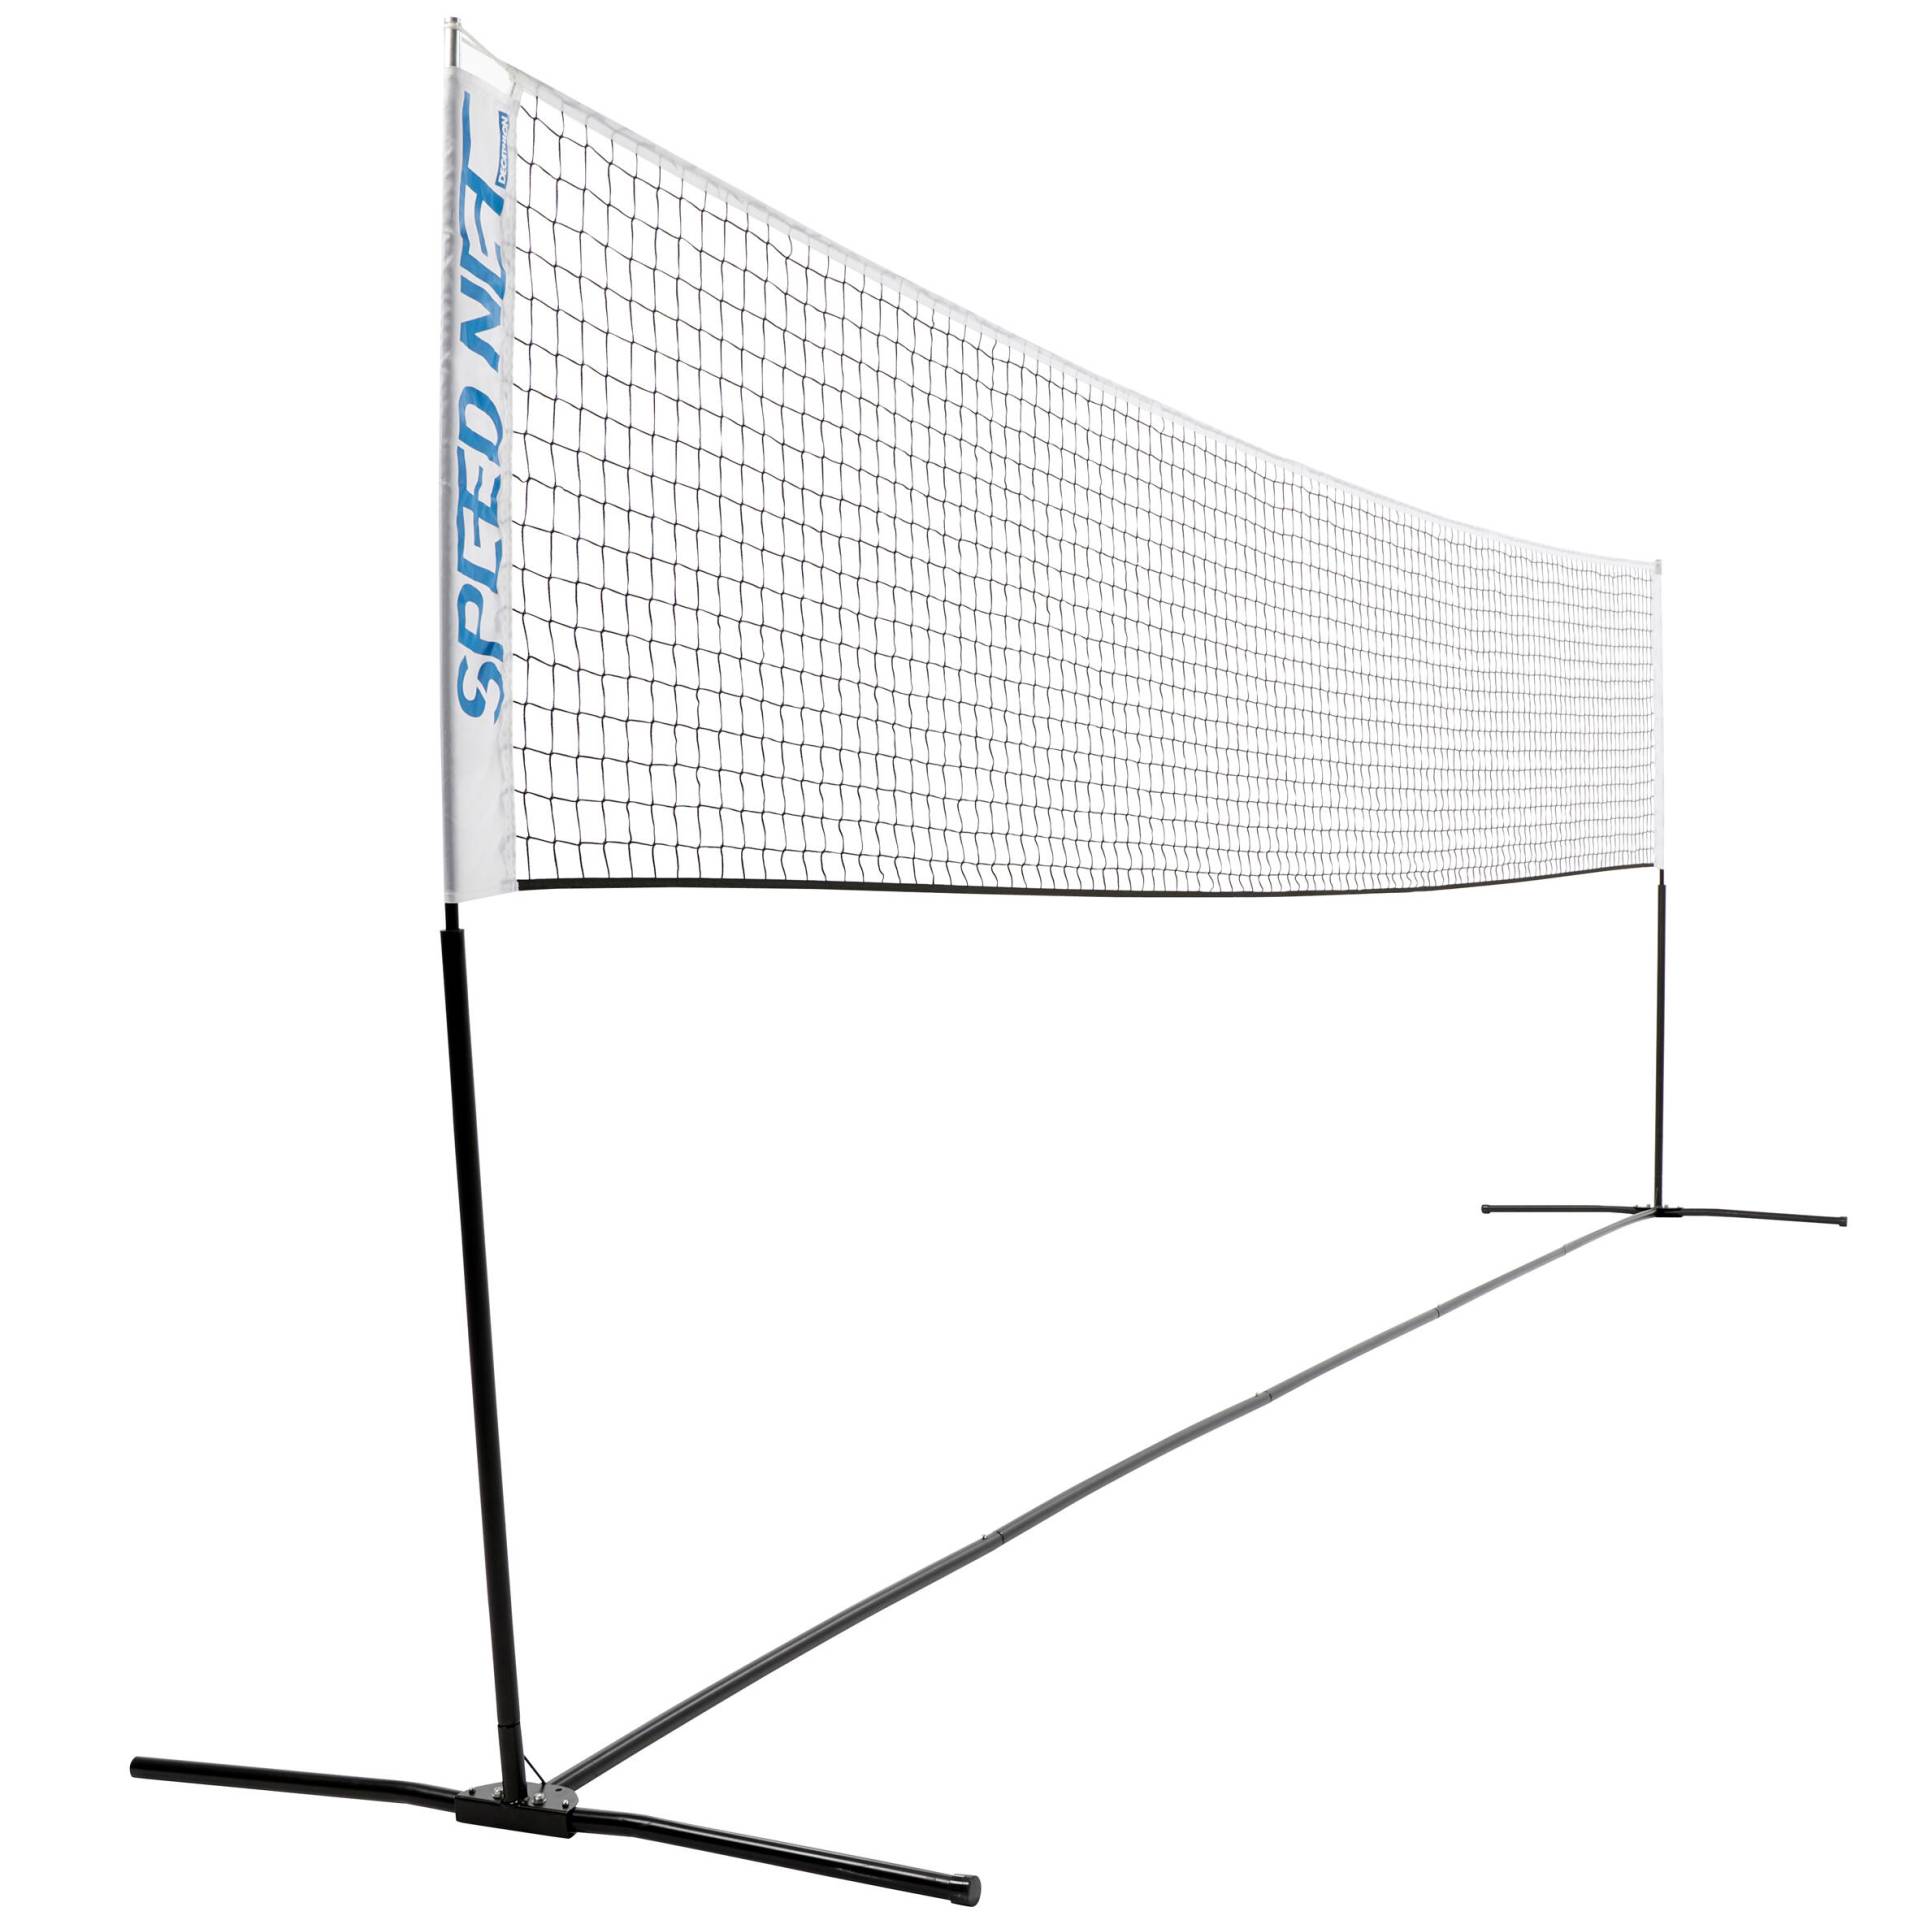 Badmintonnetz mit Pfosten Speednet 500 von PERFLY